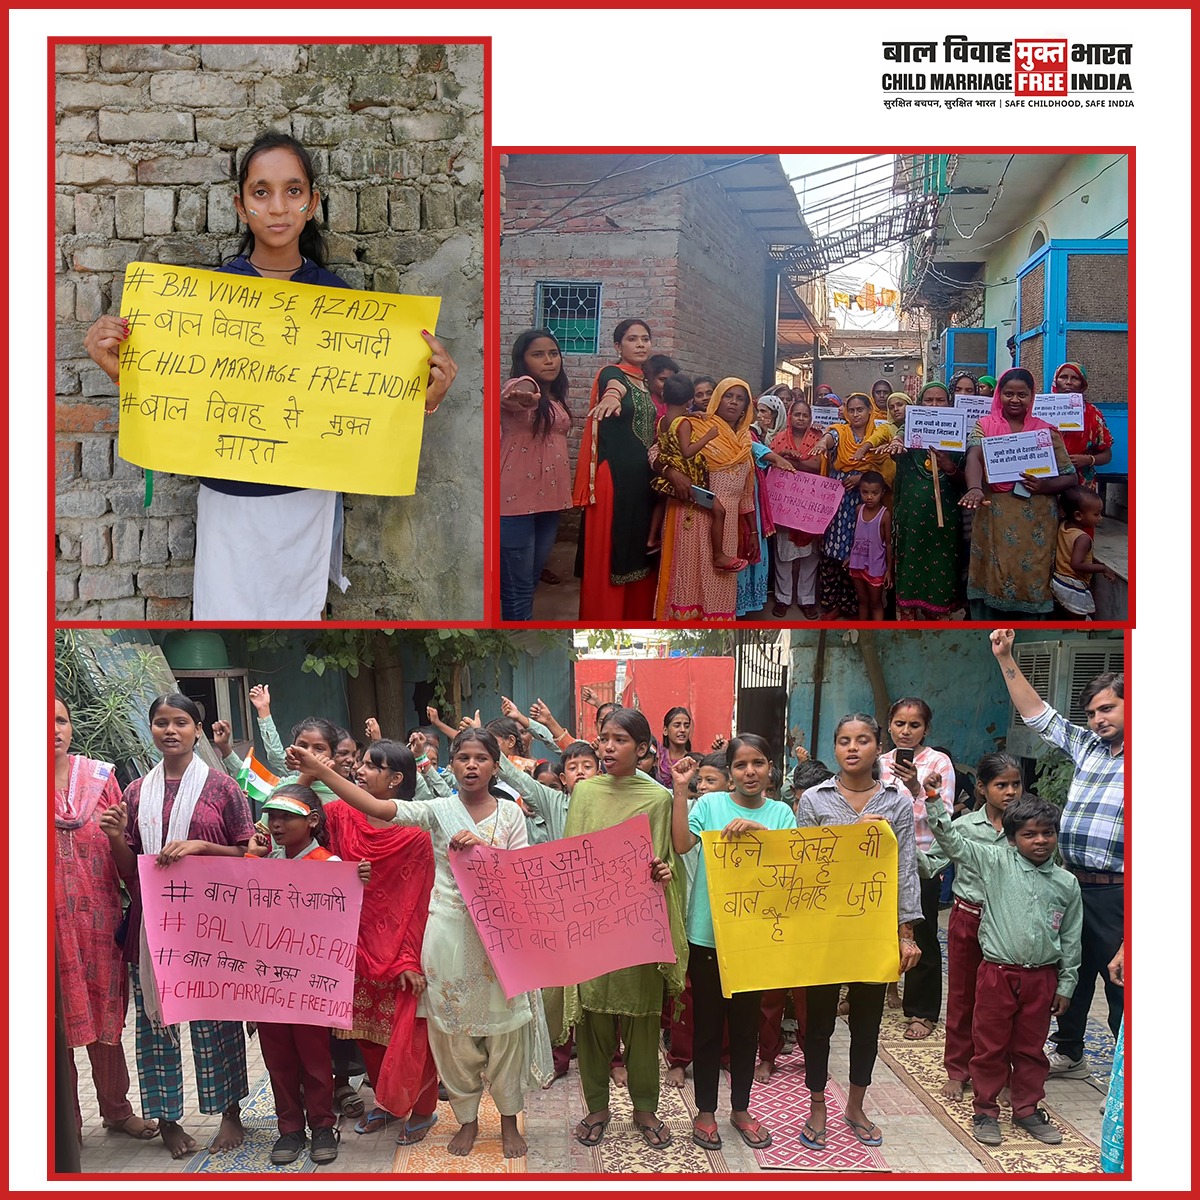 हमारे सहयोगी संगठन बाल विकास धारा संस्था ने #दिल्ली में #अक्षयतृतीया के अवसर पर लोगों को बाल विवाह के खिलाफ जागरूक किया। #AkshayaTritiya #Balvivahseazadi #ChildMarriageFreeIndia #cmfi @dtptraffic @ArvindKejriwal @CMODelhi @INCIndia